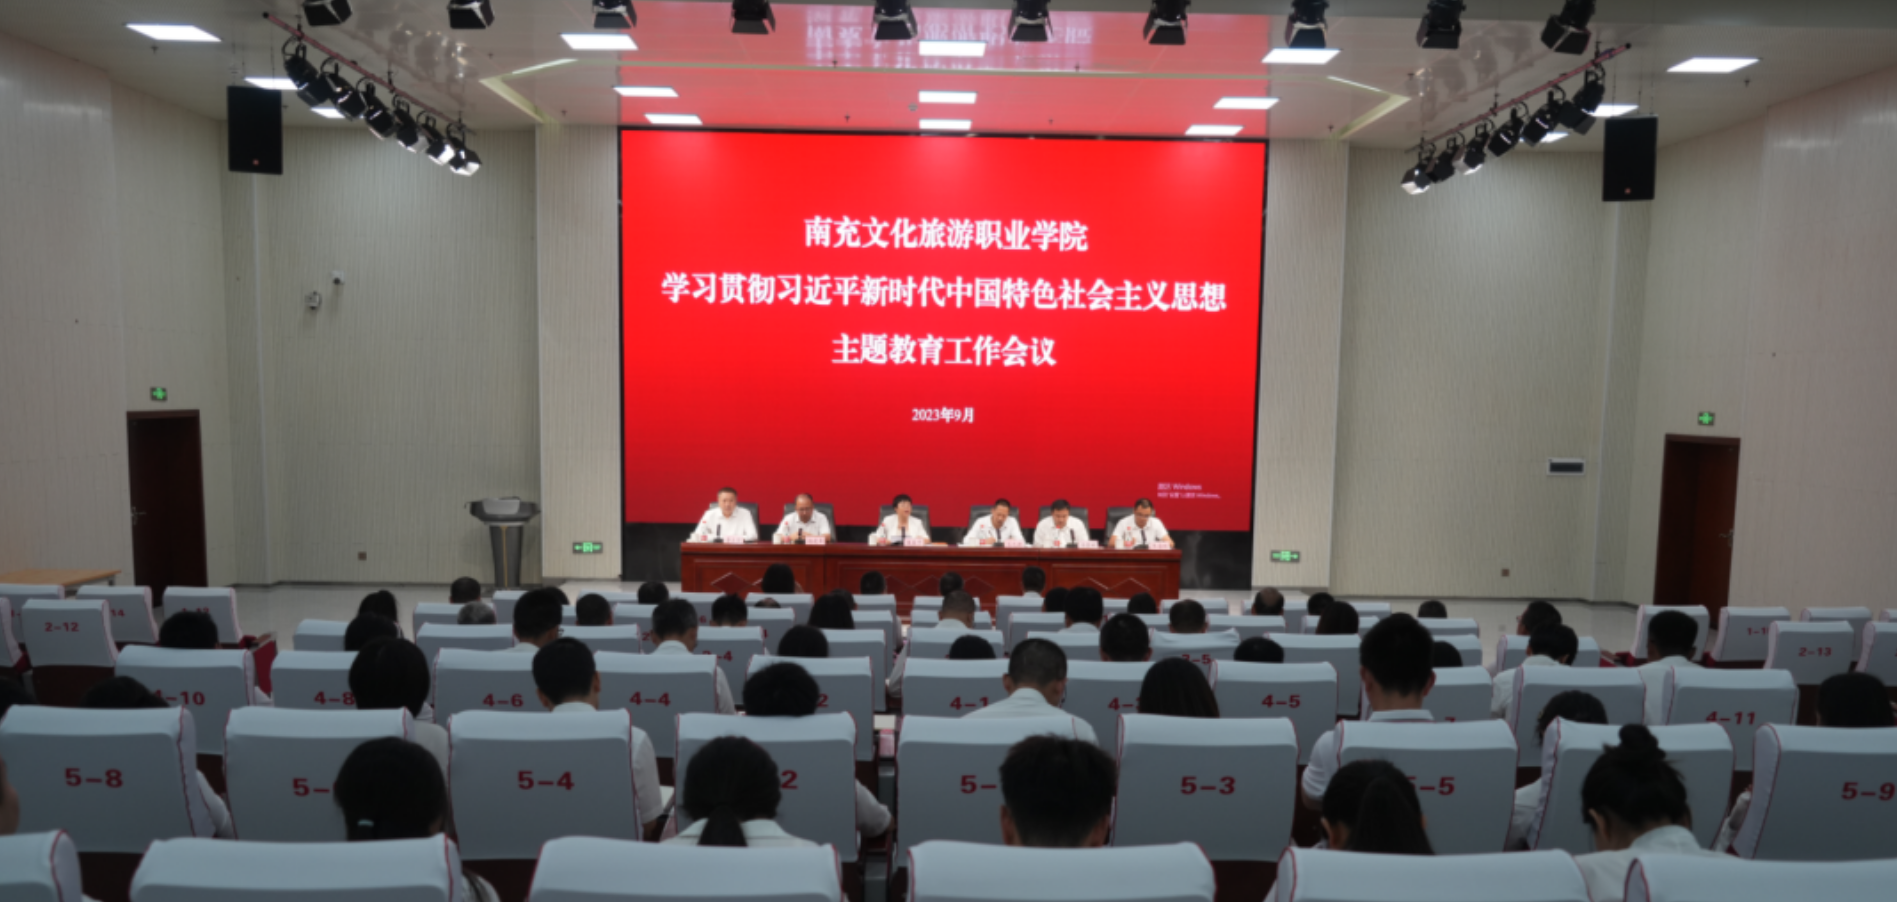 我校召开学习贯彻习近平新时代中国特色社会主义思想主题教育工作会议